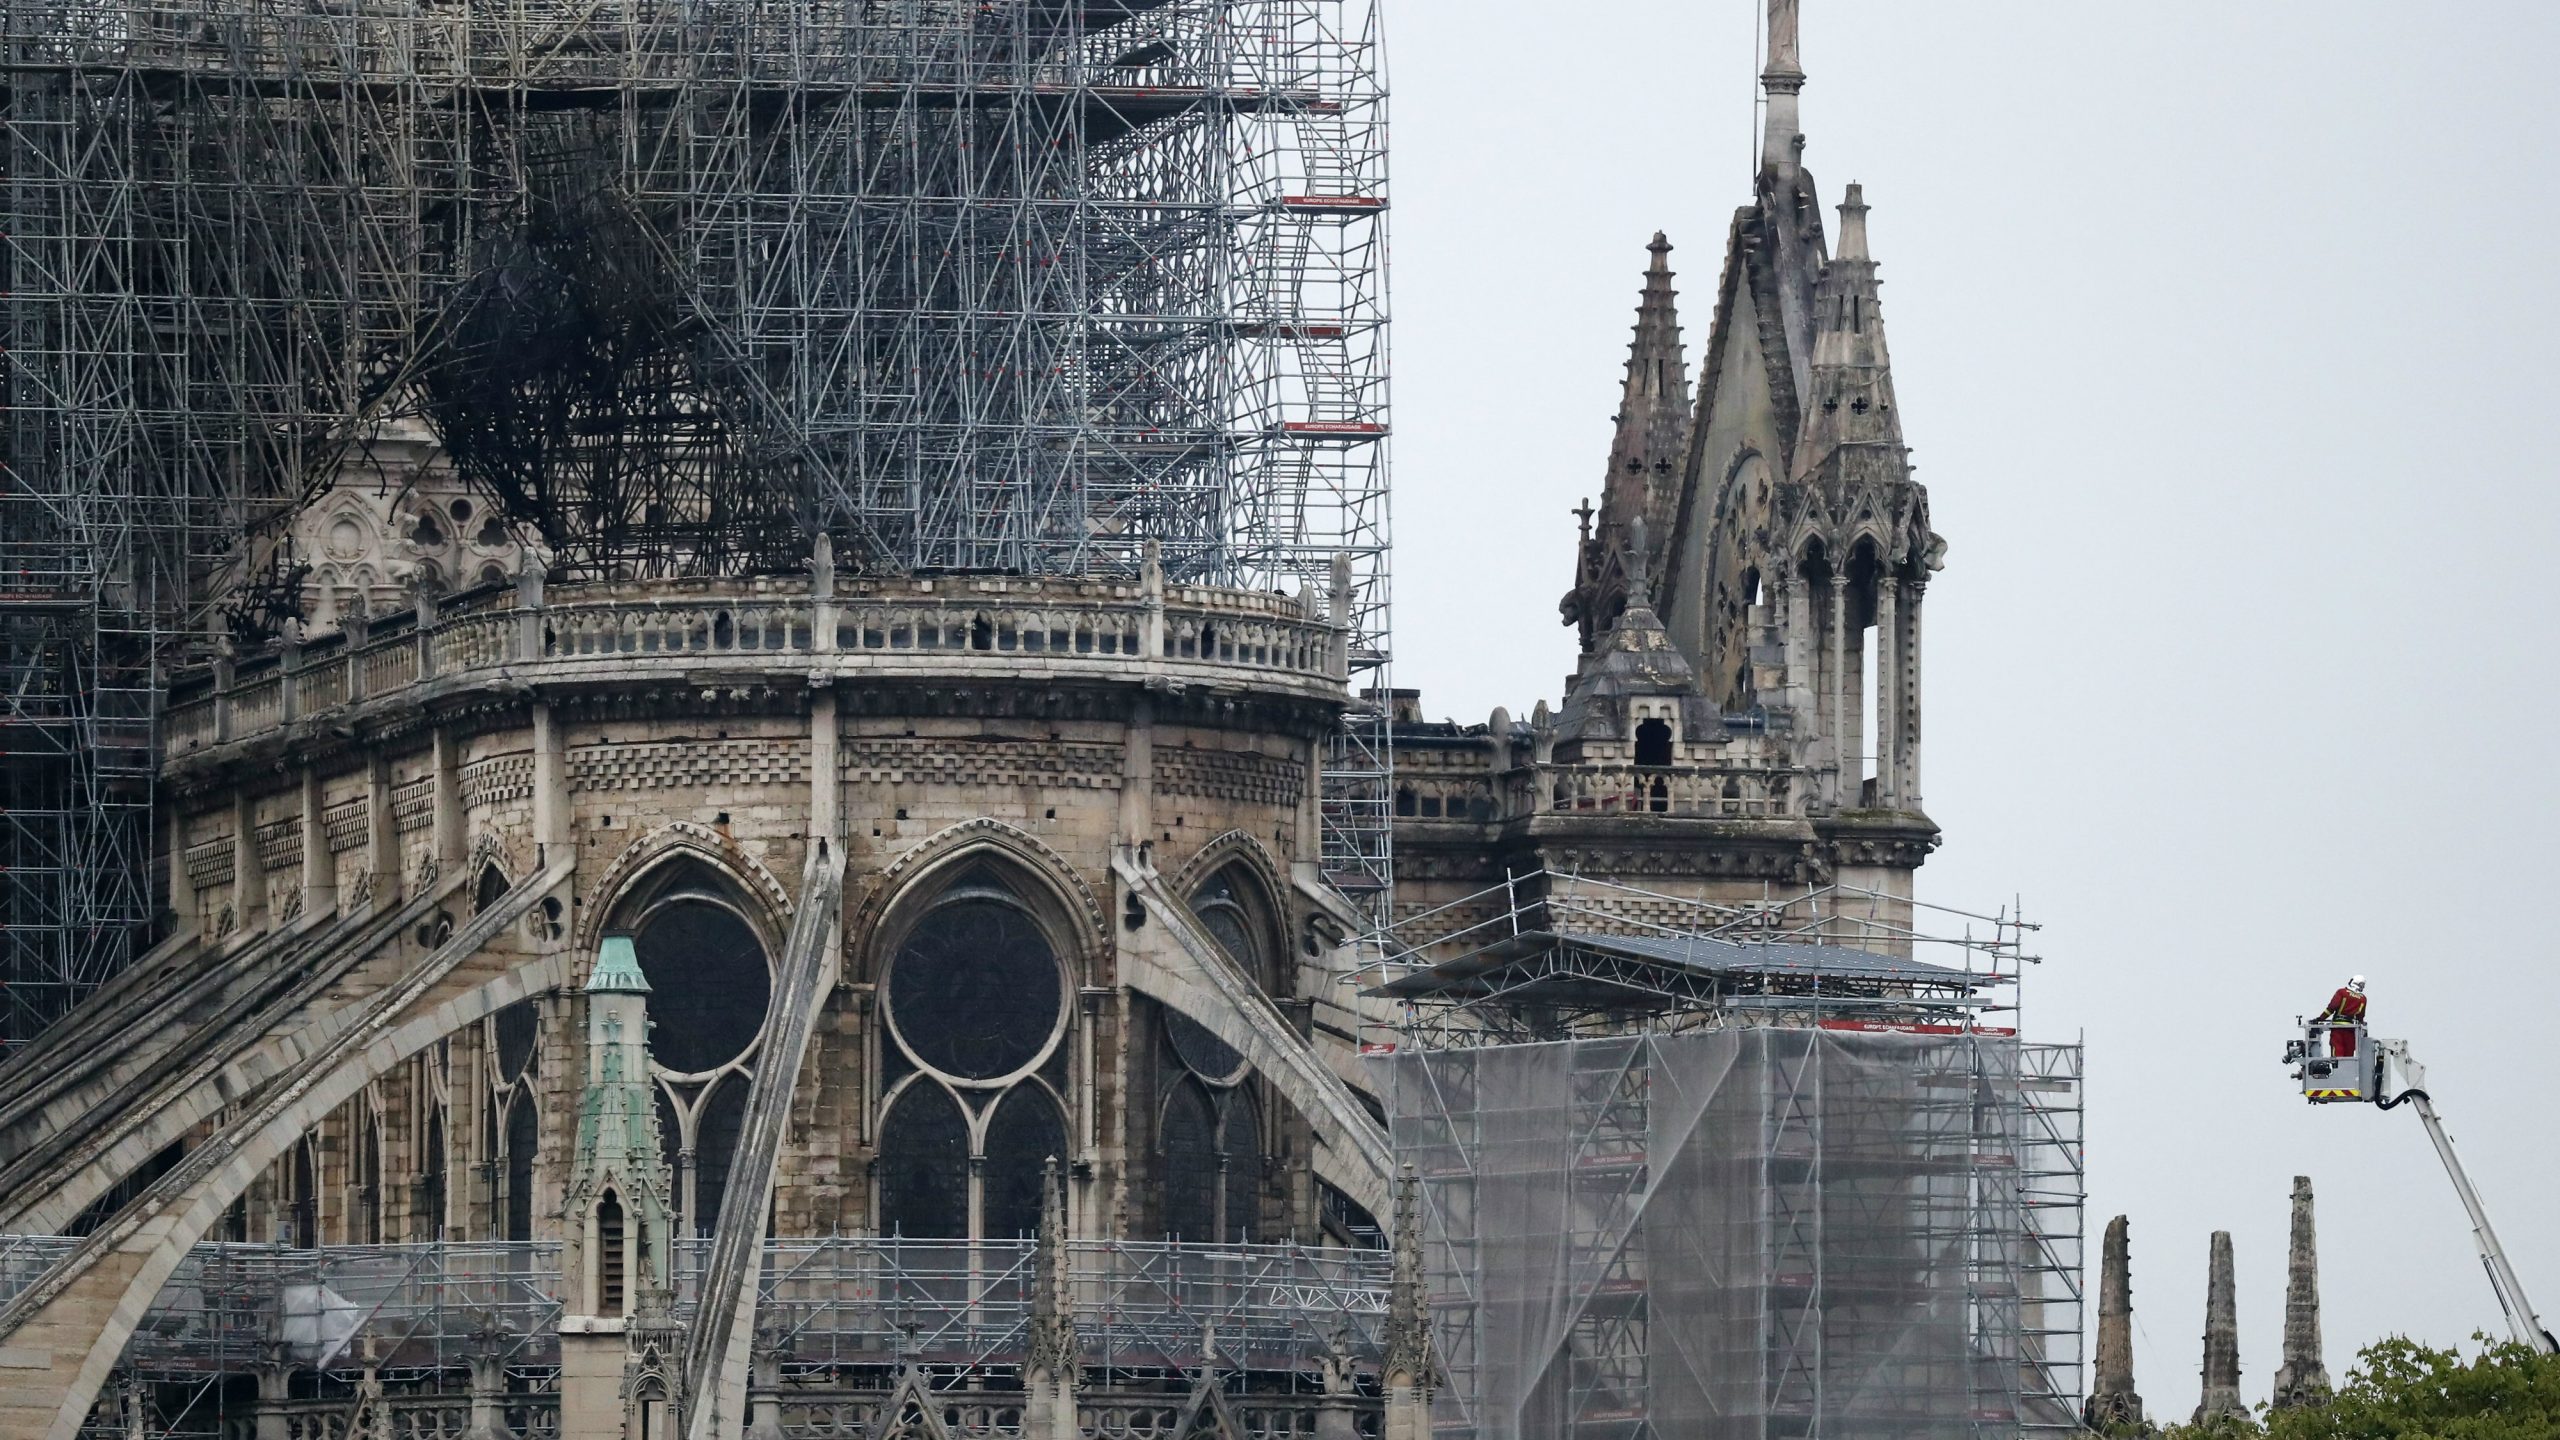 Pariska katedrala Notr Dam i dalje u opasnosti 1